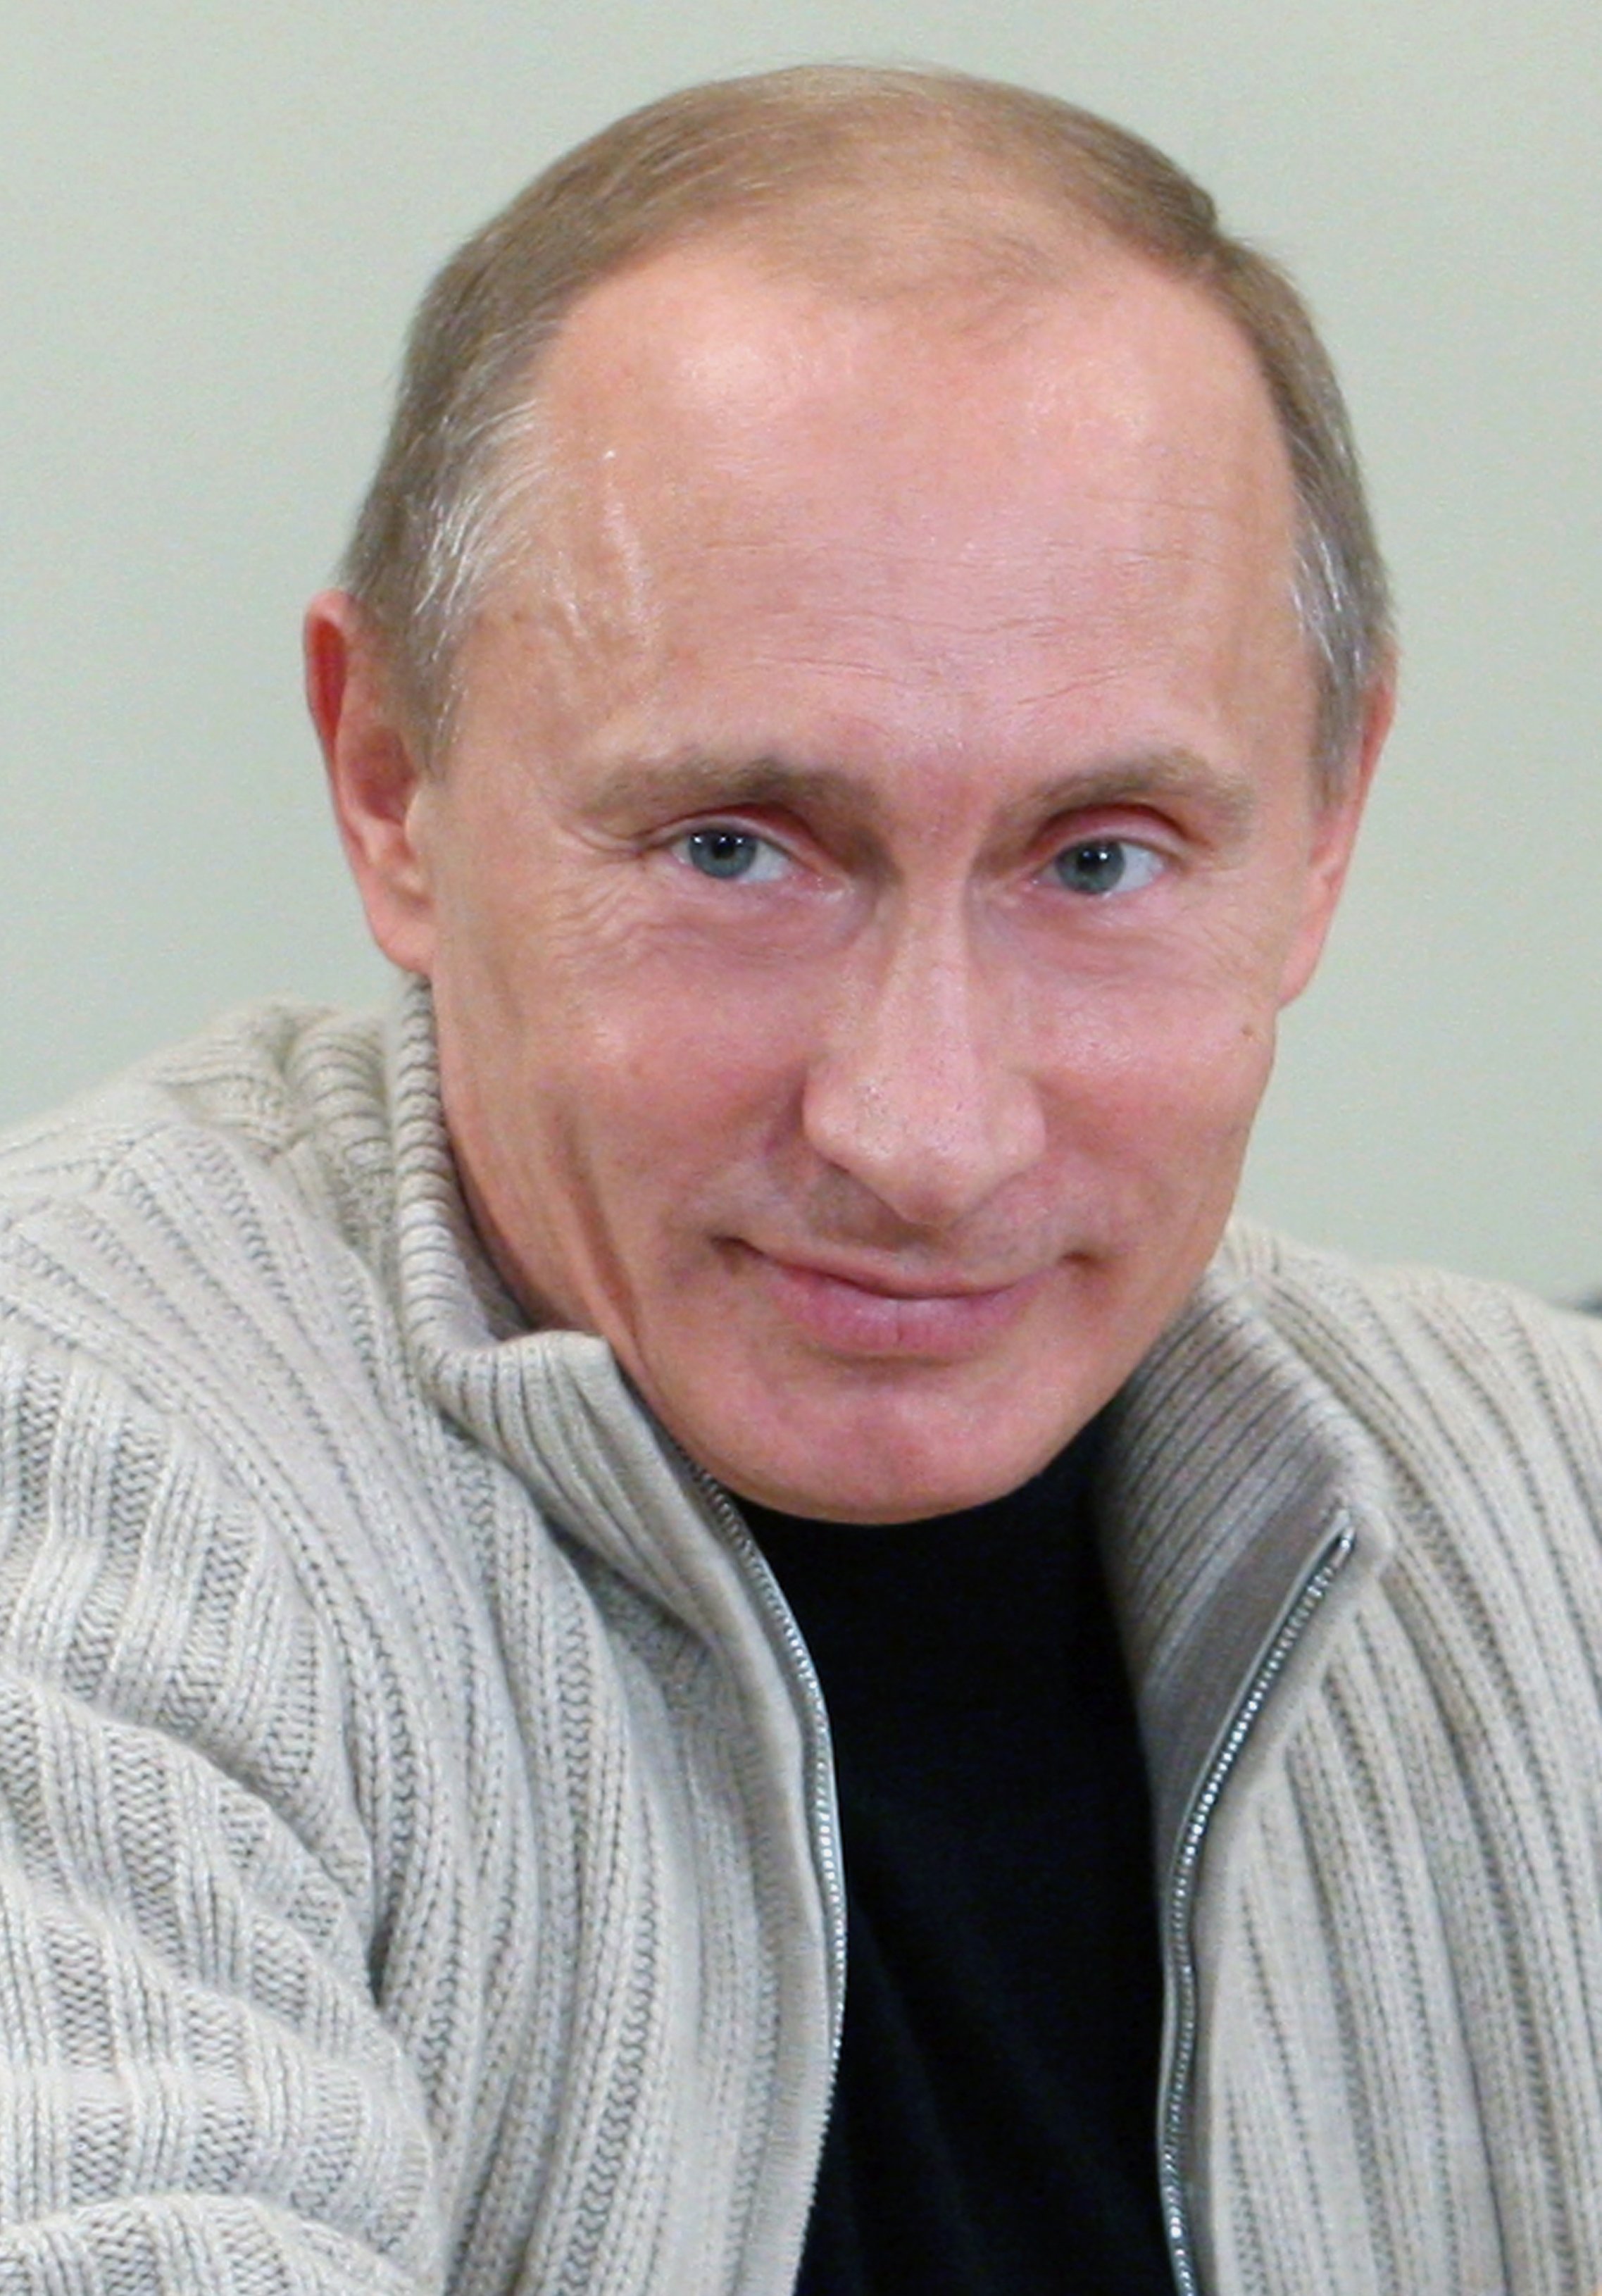 Фото Путина В Хорошем Качестве 2022